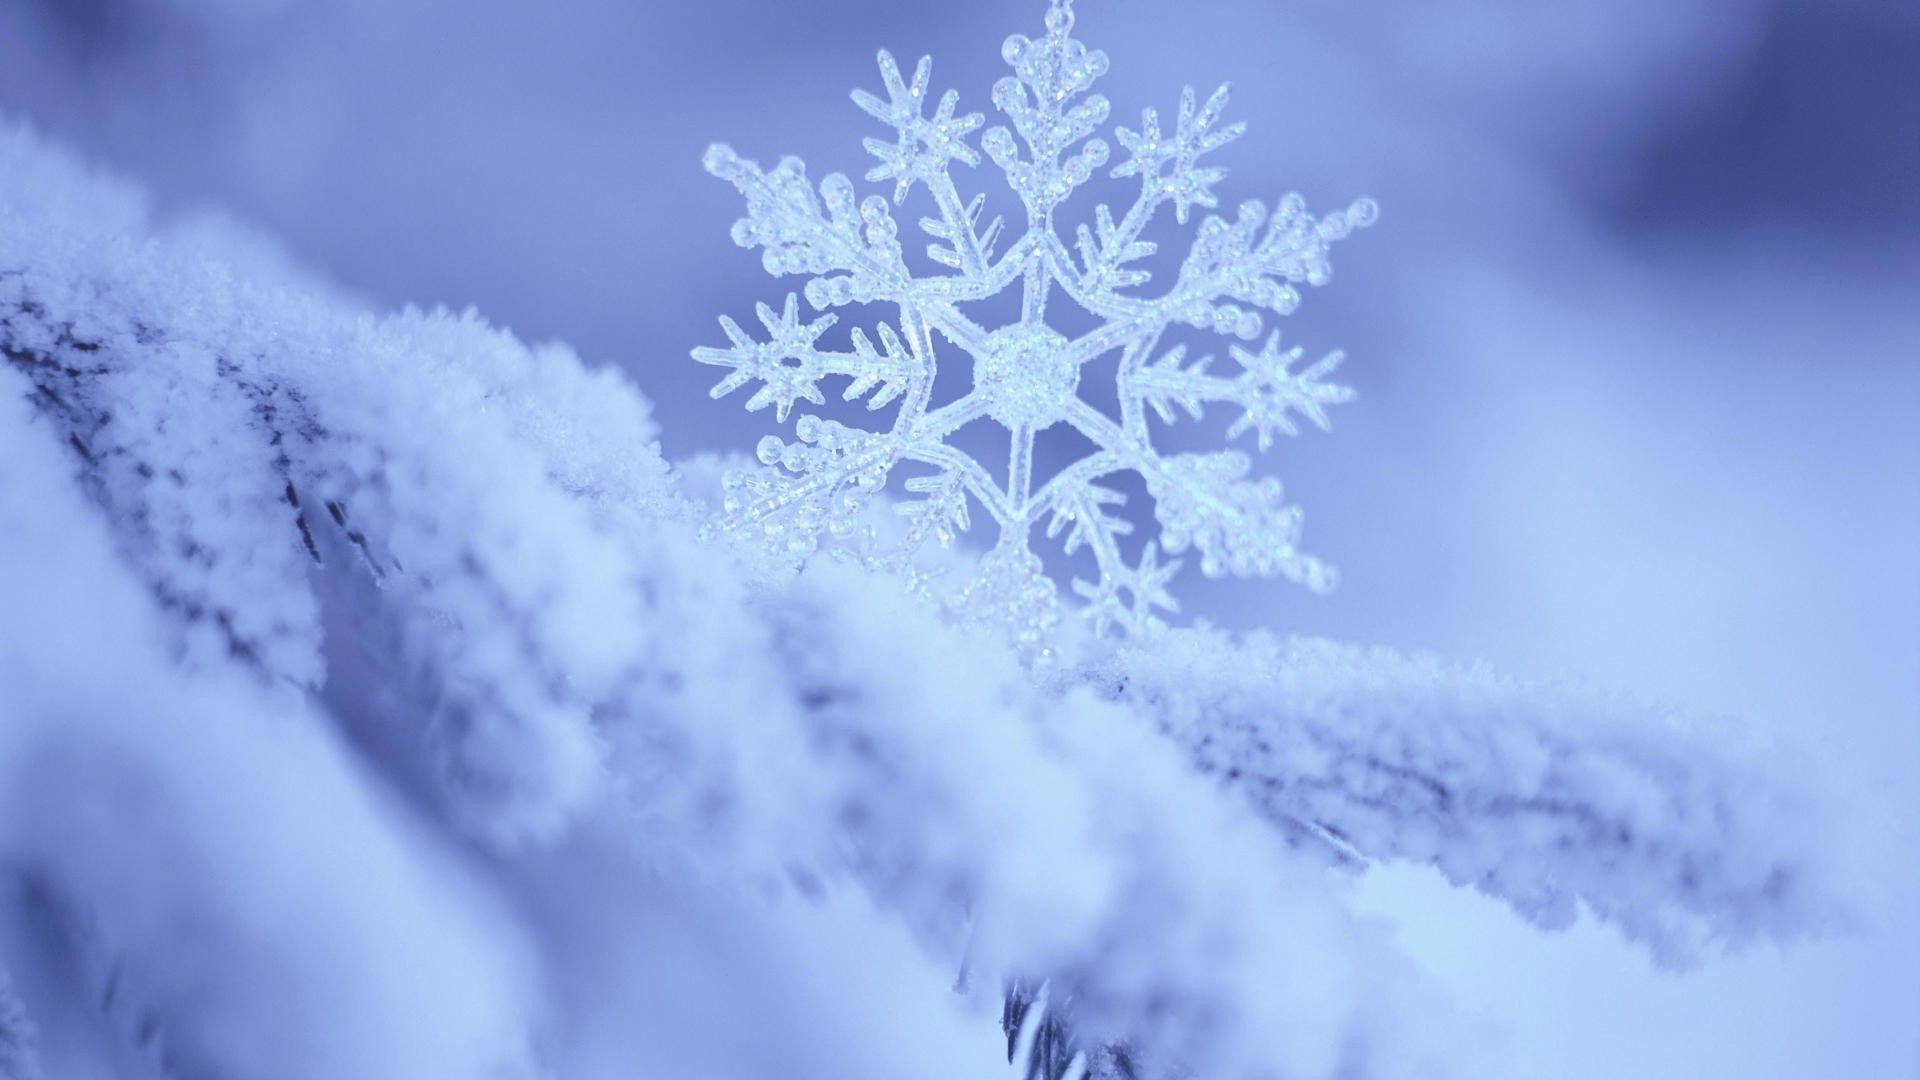 Cute Snowflake Desktop Wallpapers - Top Free Cute Snowflake Desktop ...